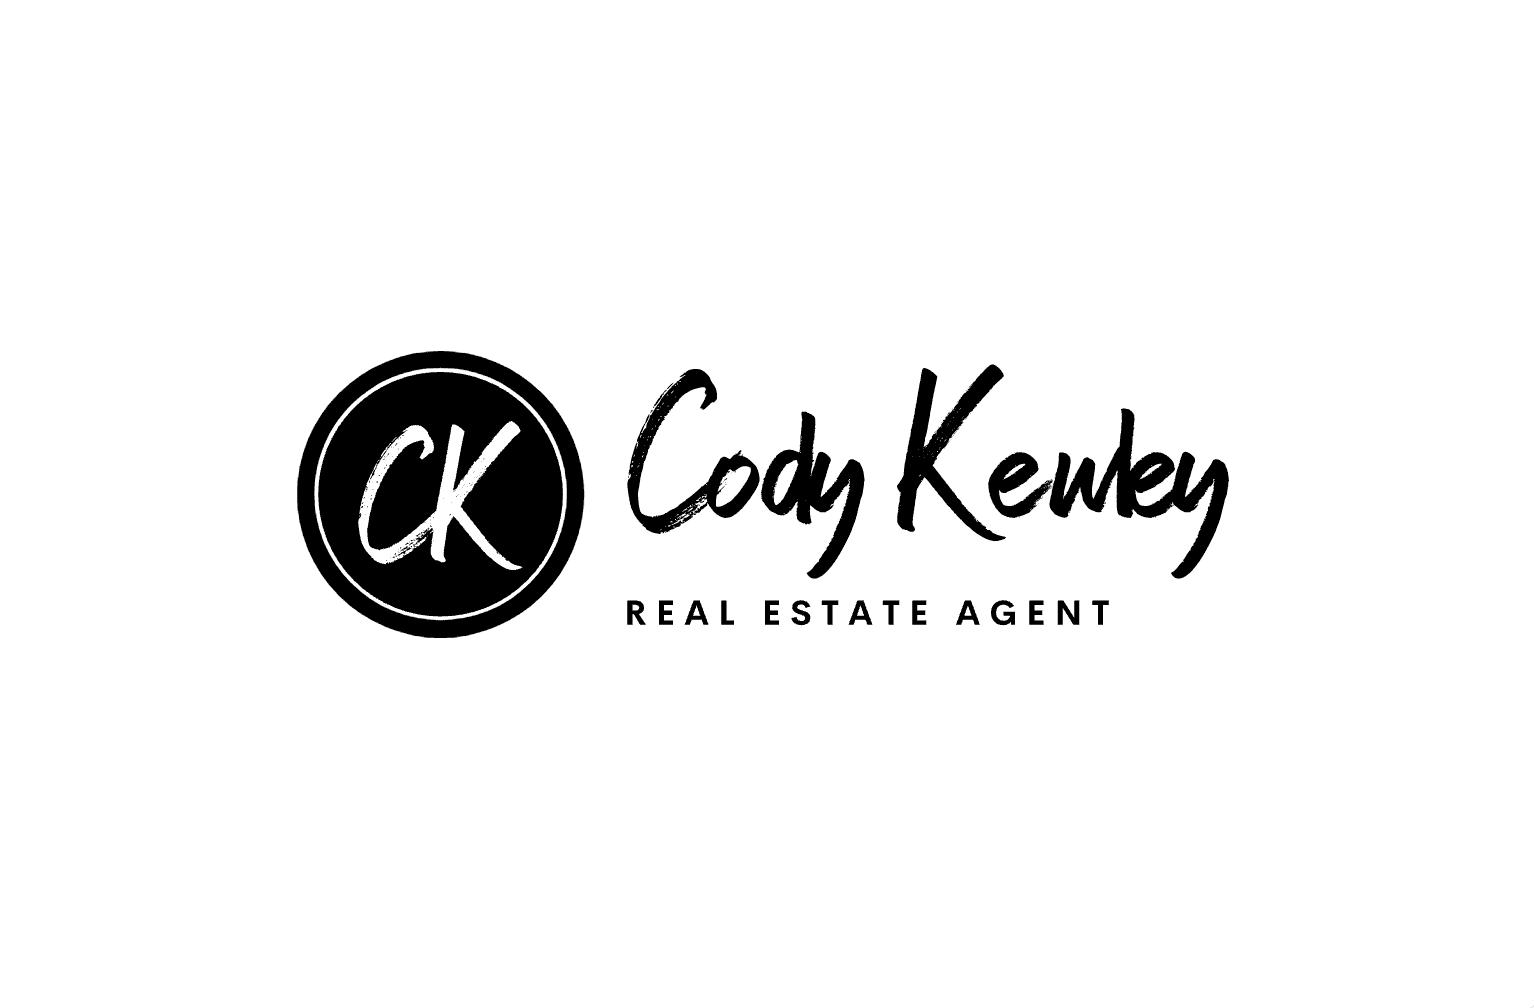 Cody Kewley Real Estate Agent | Fathom Realty logo